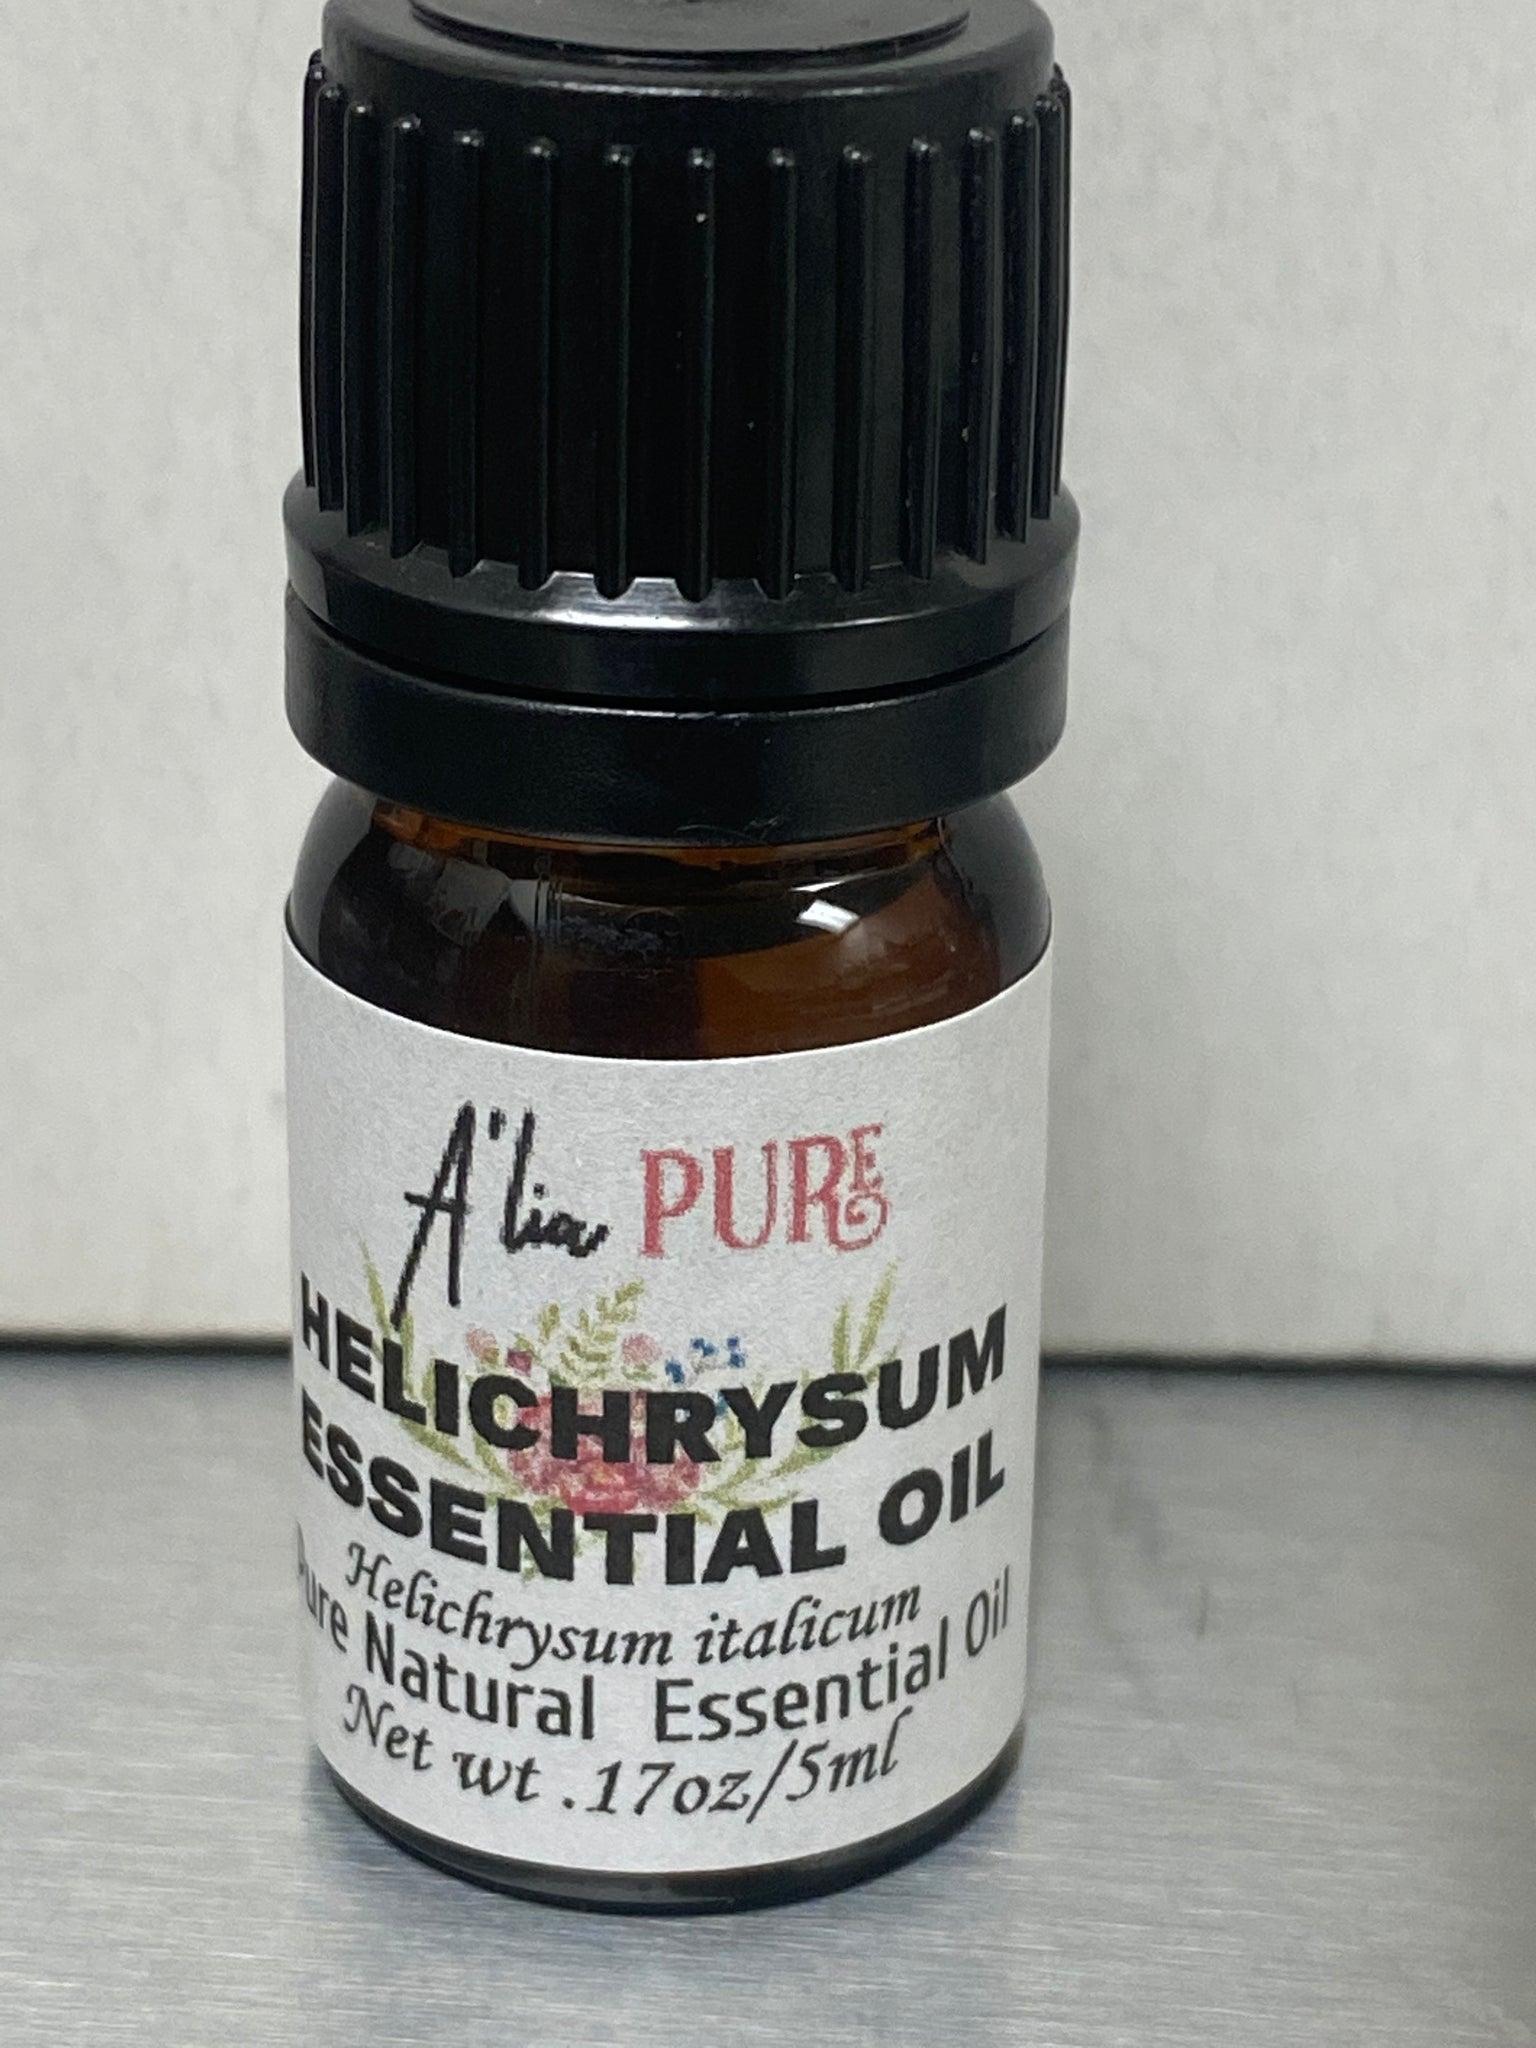 Helichrysum Essential Oil